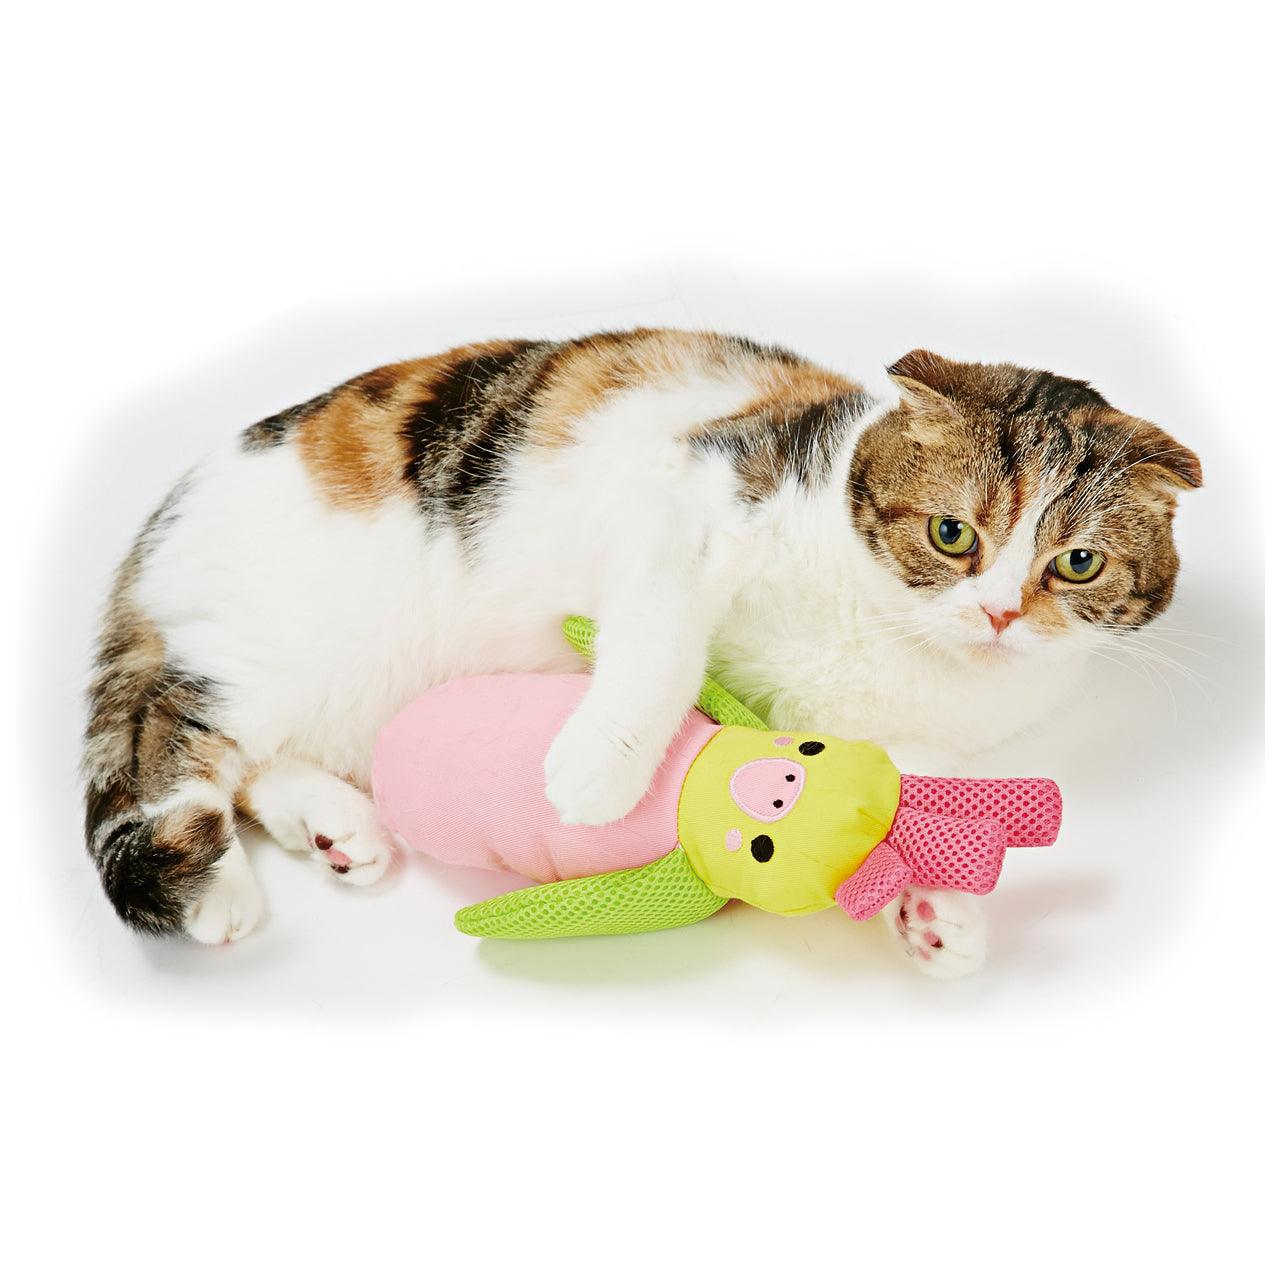 Petio Dental Care Parrot Kicking Toy (with Catnip) - Cats1stUK